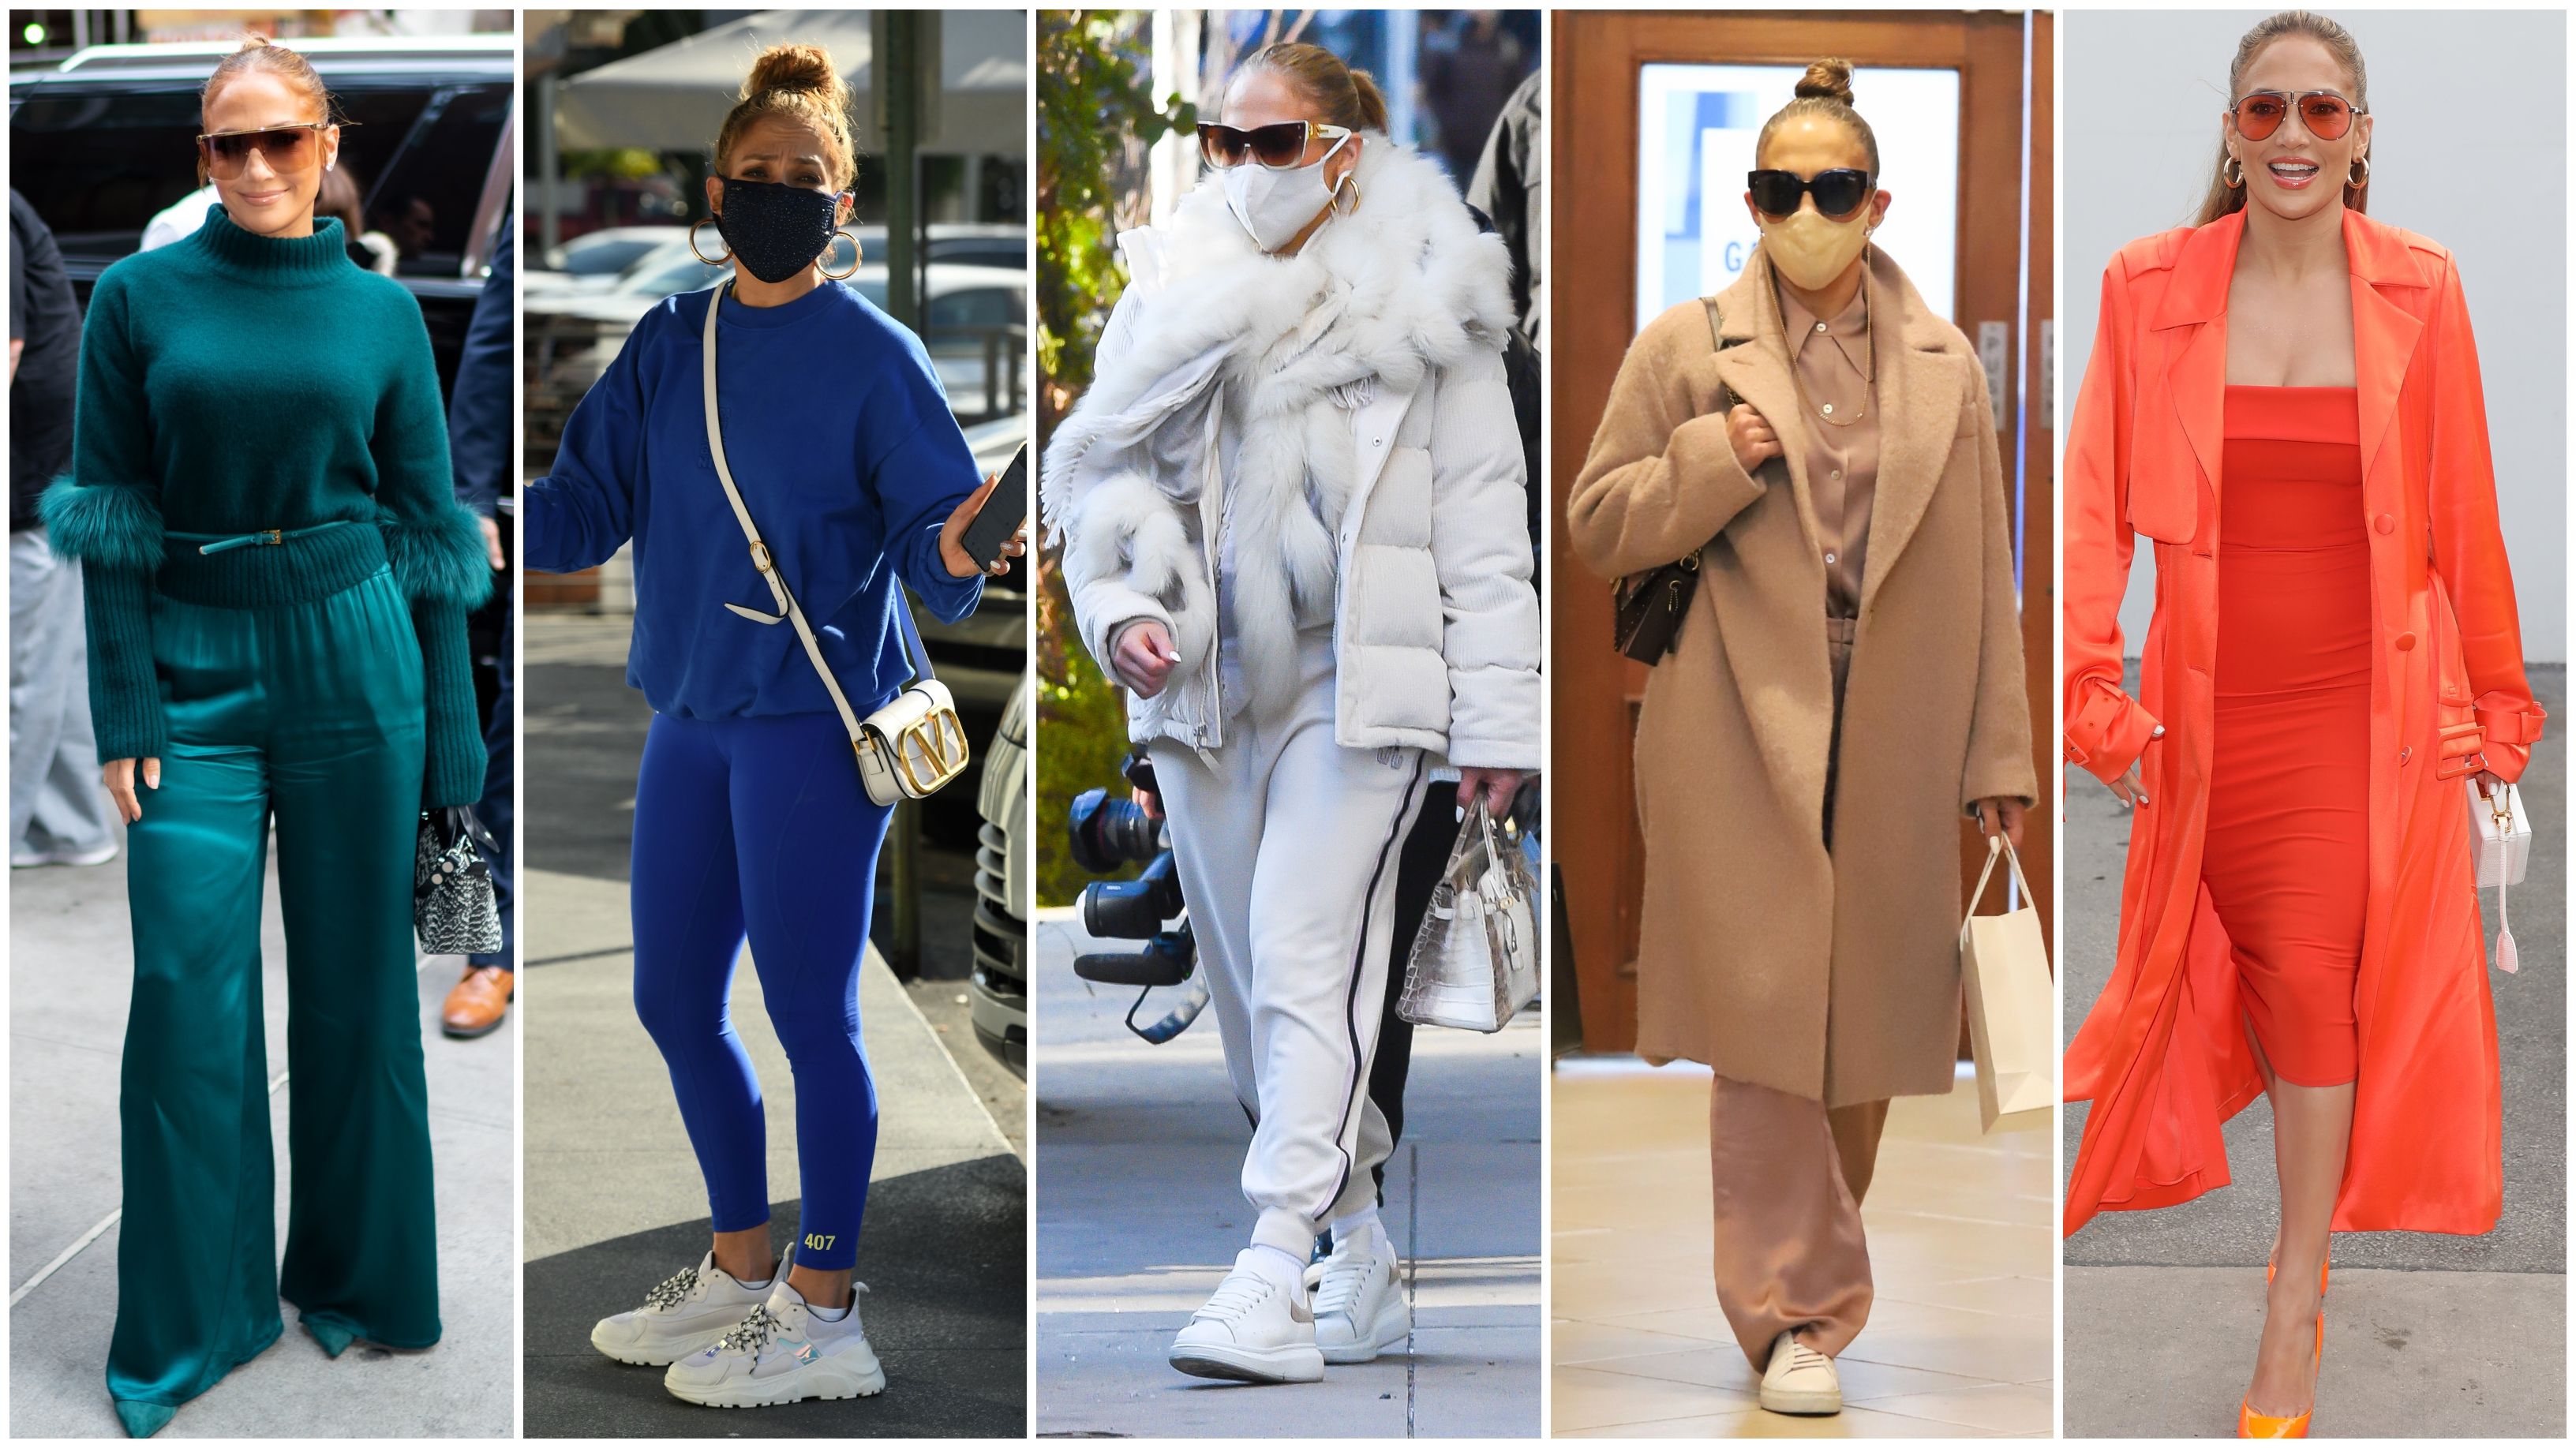 Jennifer Lopez - Viaja con estilo con un look de mi colección #JLOxCoppel .  Descubre más